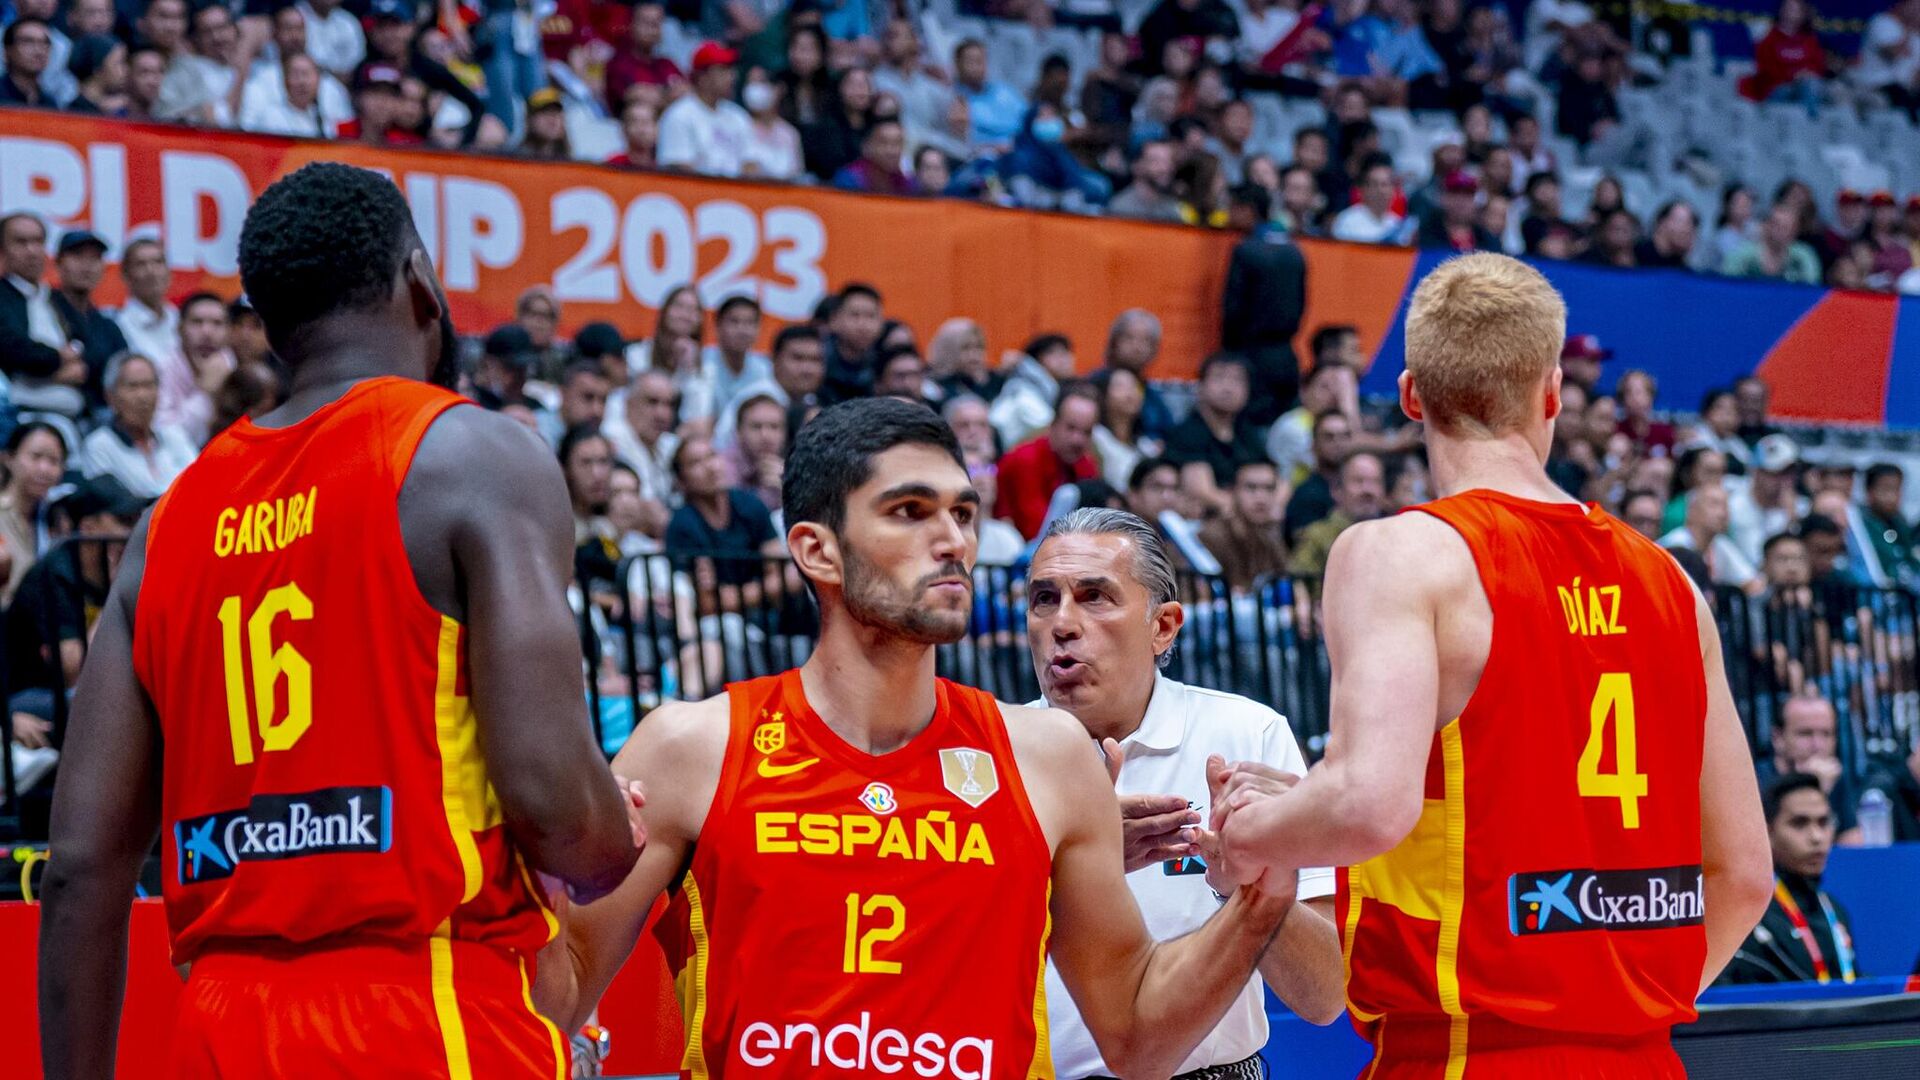 Иран - Испания. Прогноз и ставки на баскетбол. 30 августа 2023 года